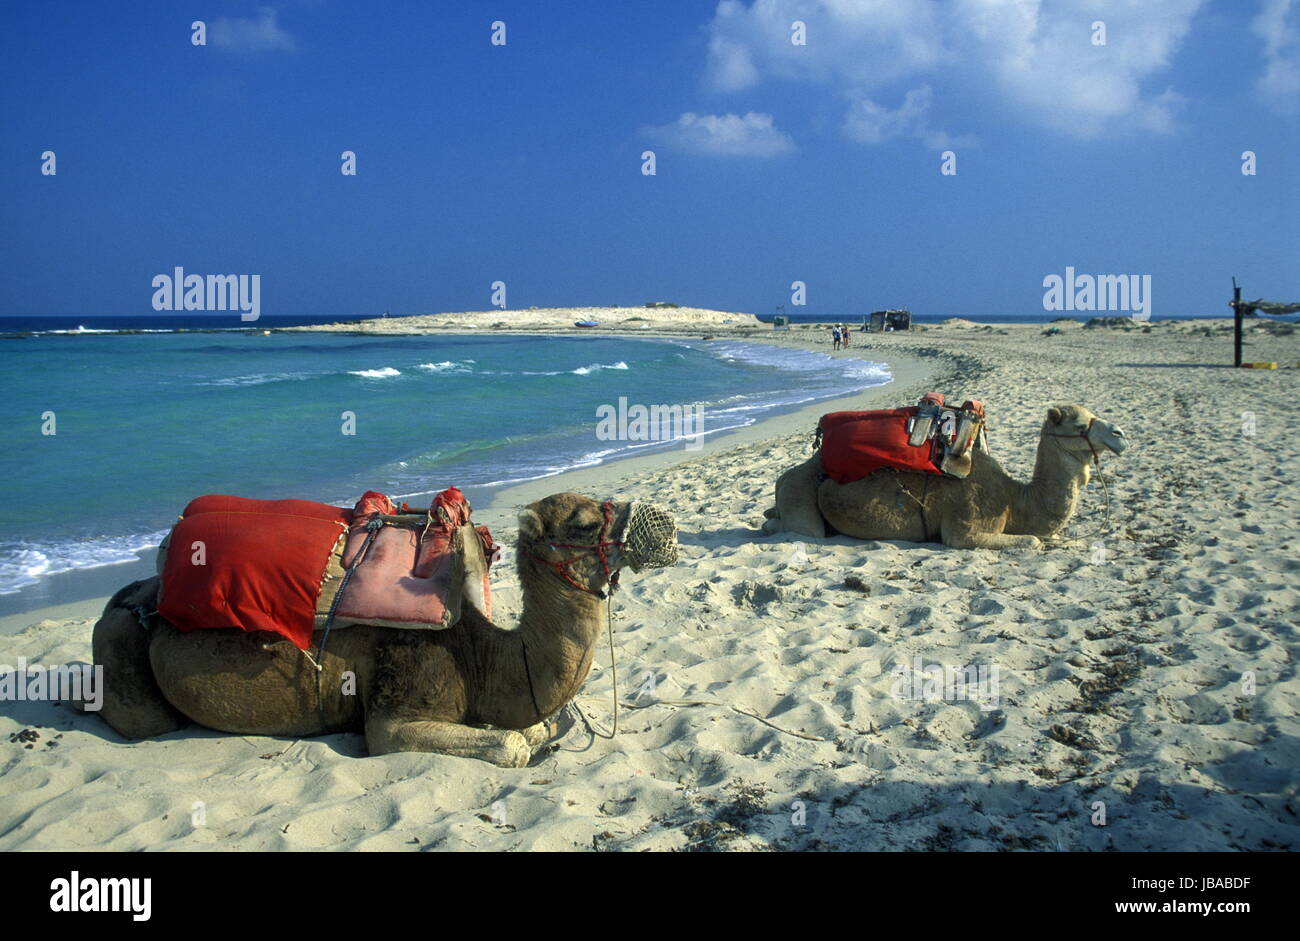 Ein Sandstrand Auf der Insel Jierba Im Sueden von Tunesien in Nordafrika. Stockfoto